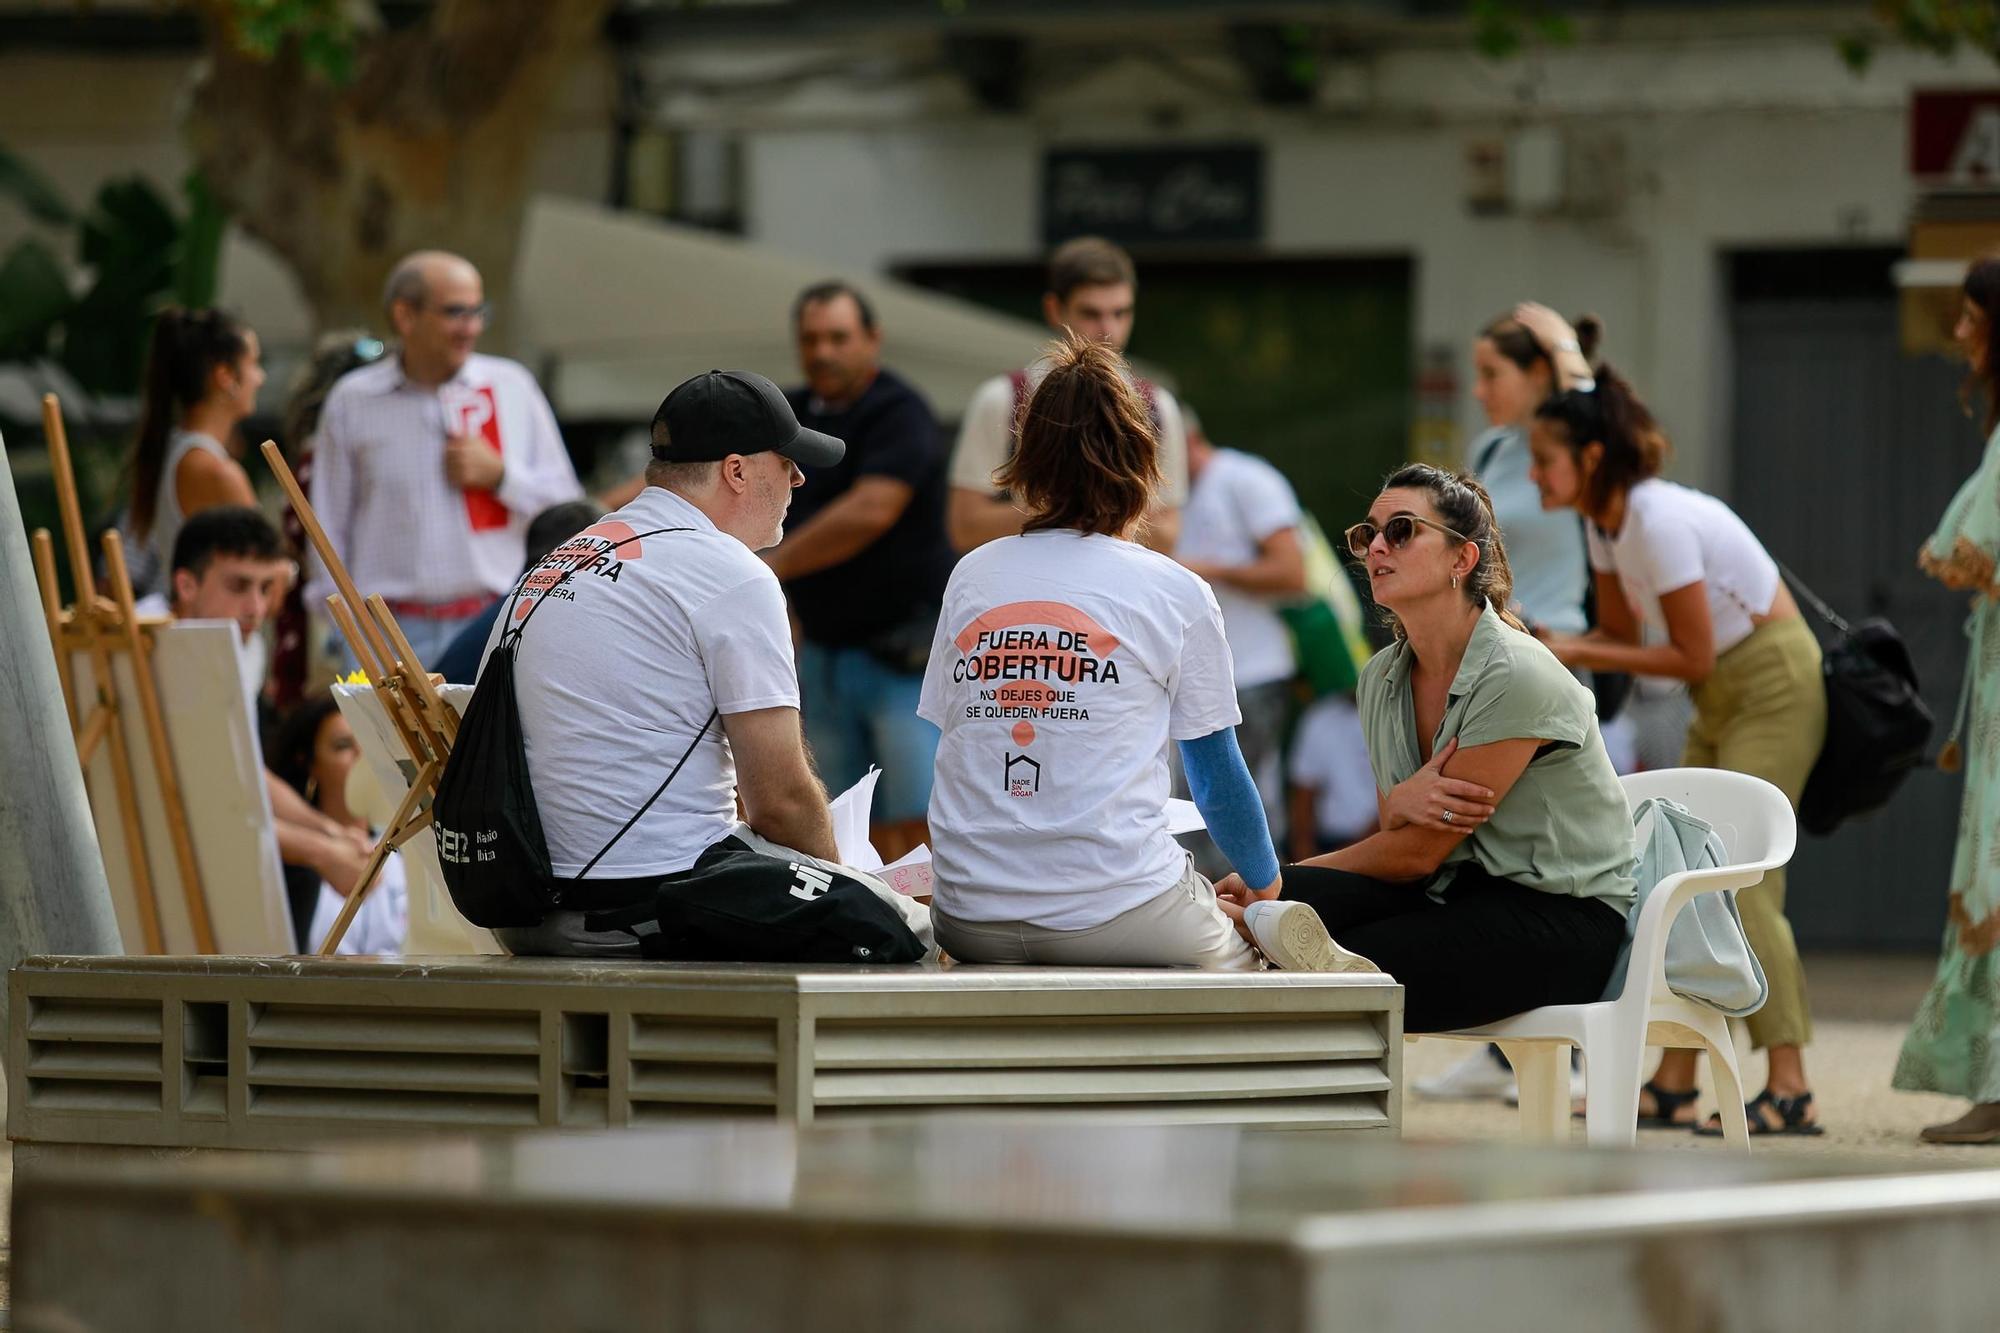 La celebración del Día de las Personas sin Hogar en Ibiza, en imágenes